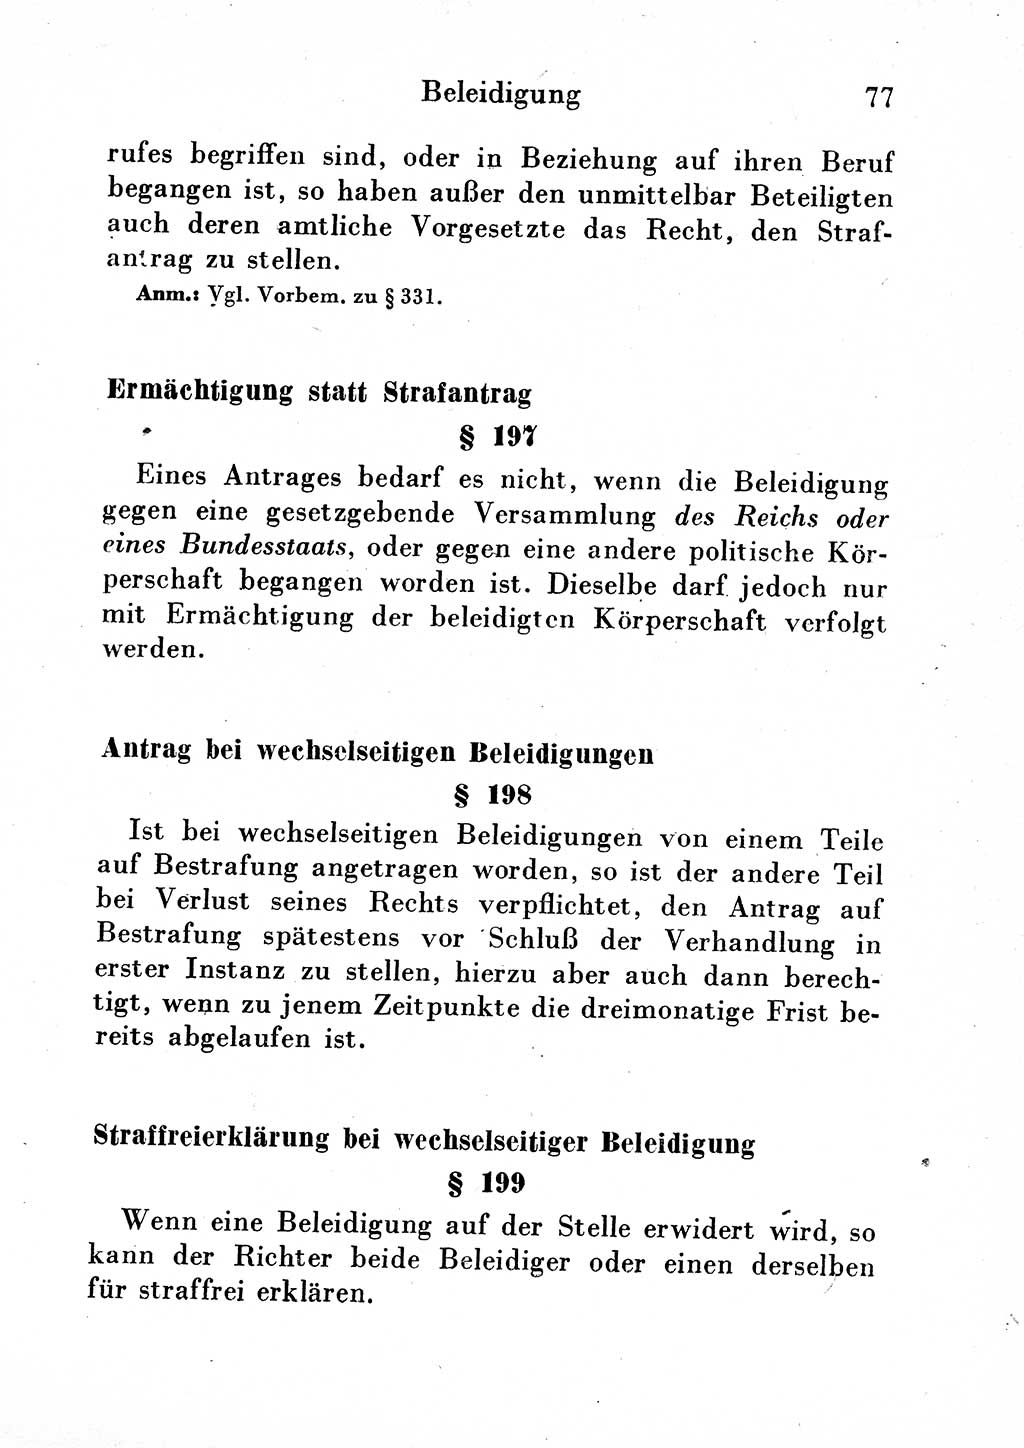 Strafgesetzbuch (StGB) und andere Strafgesetze [Deutsche Demokratische Republik (DDR)] 1954, Seite 77 (StGB Strafges. DDR 1954, S. 77)